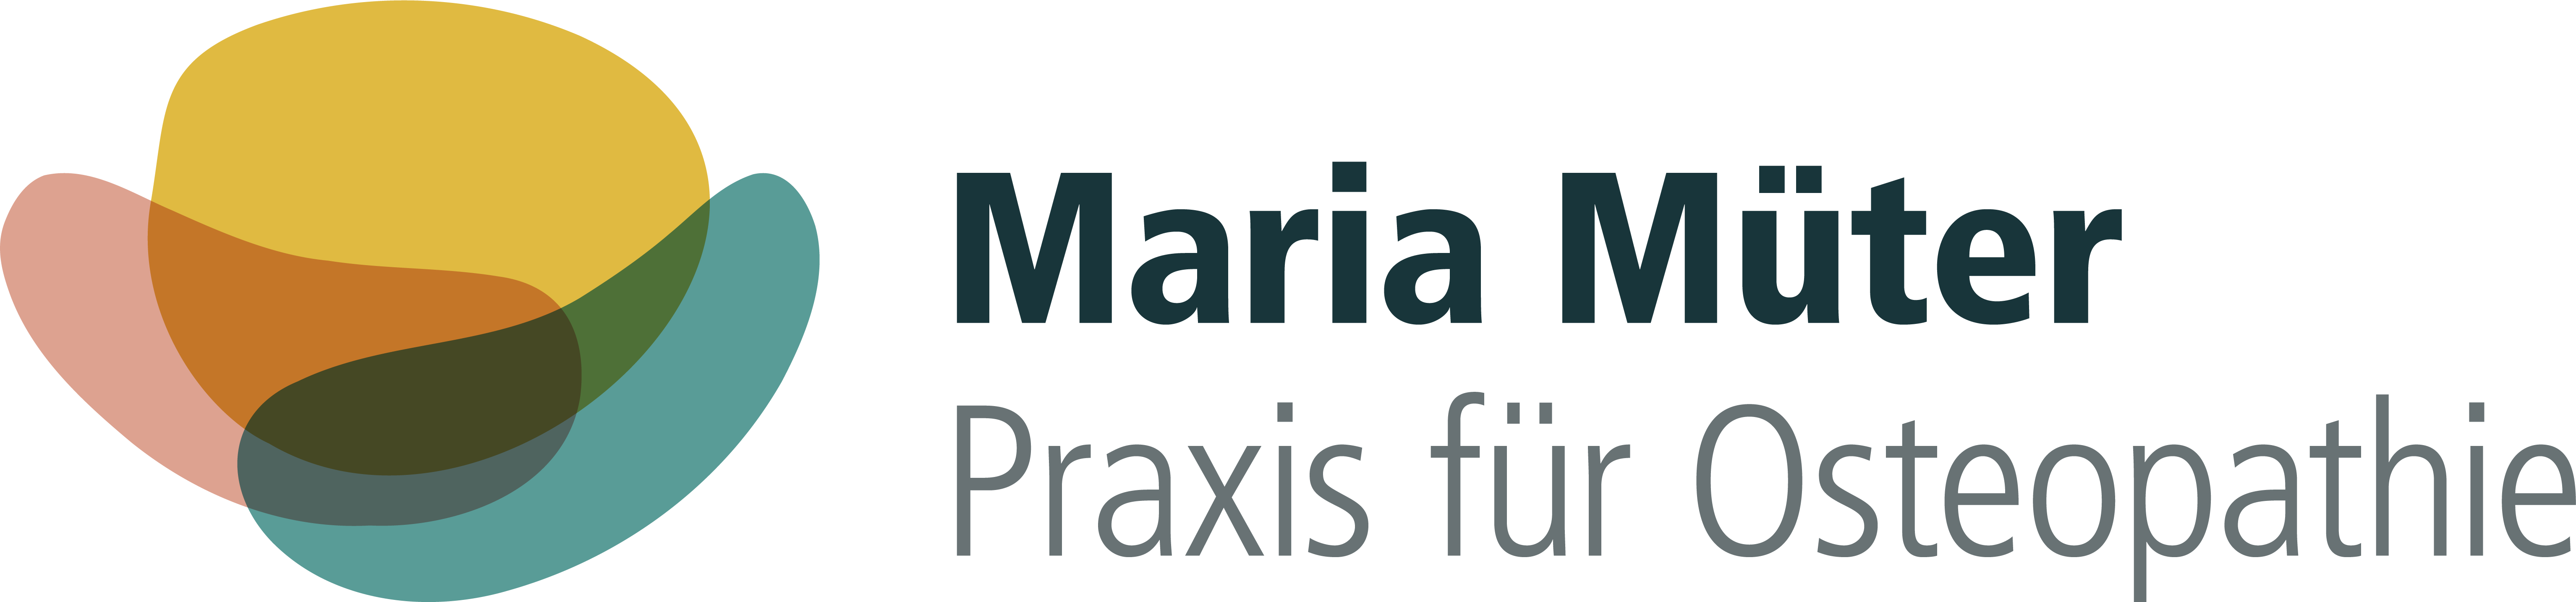 Praxis für Osteopathie | Maria Müter